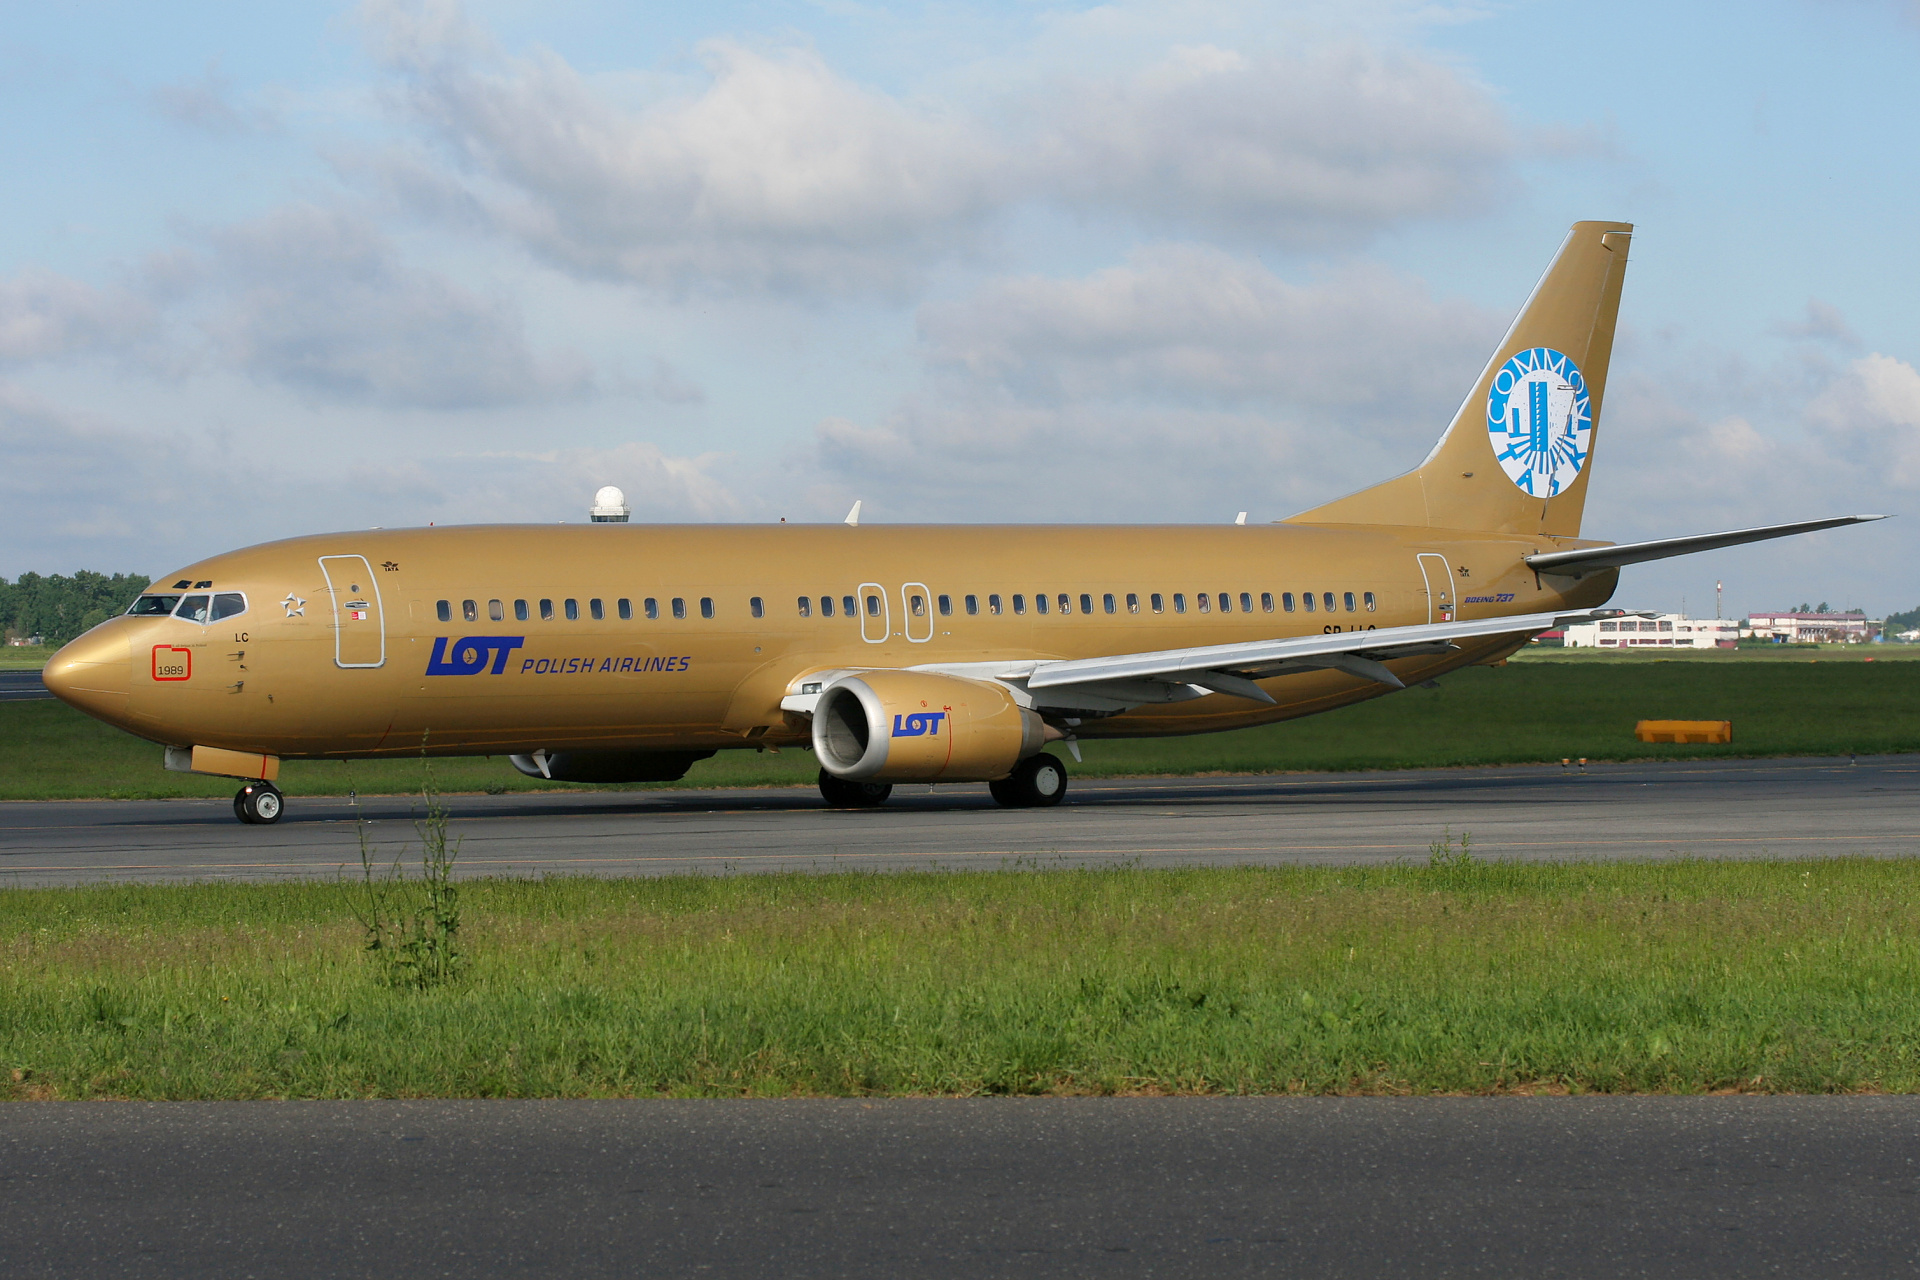 SP-LLC (malowanie Wspólna Sprawa) (Samoloty » Spotting na EPWA » Boeing 737-400 » Polskie Linie Lotnicze LOT)